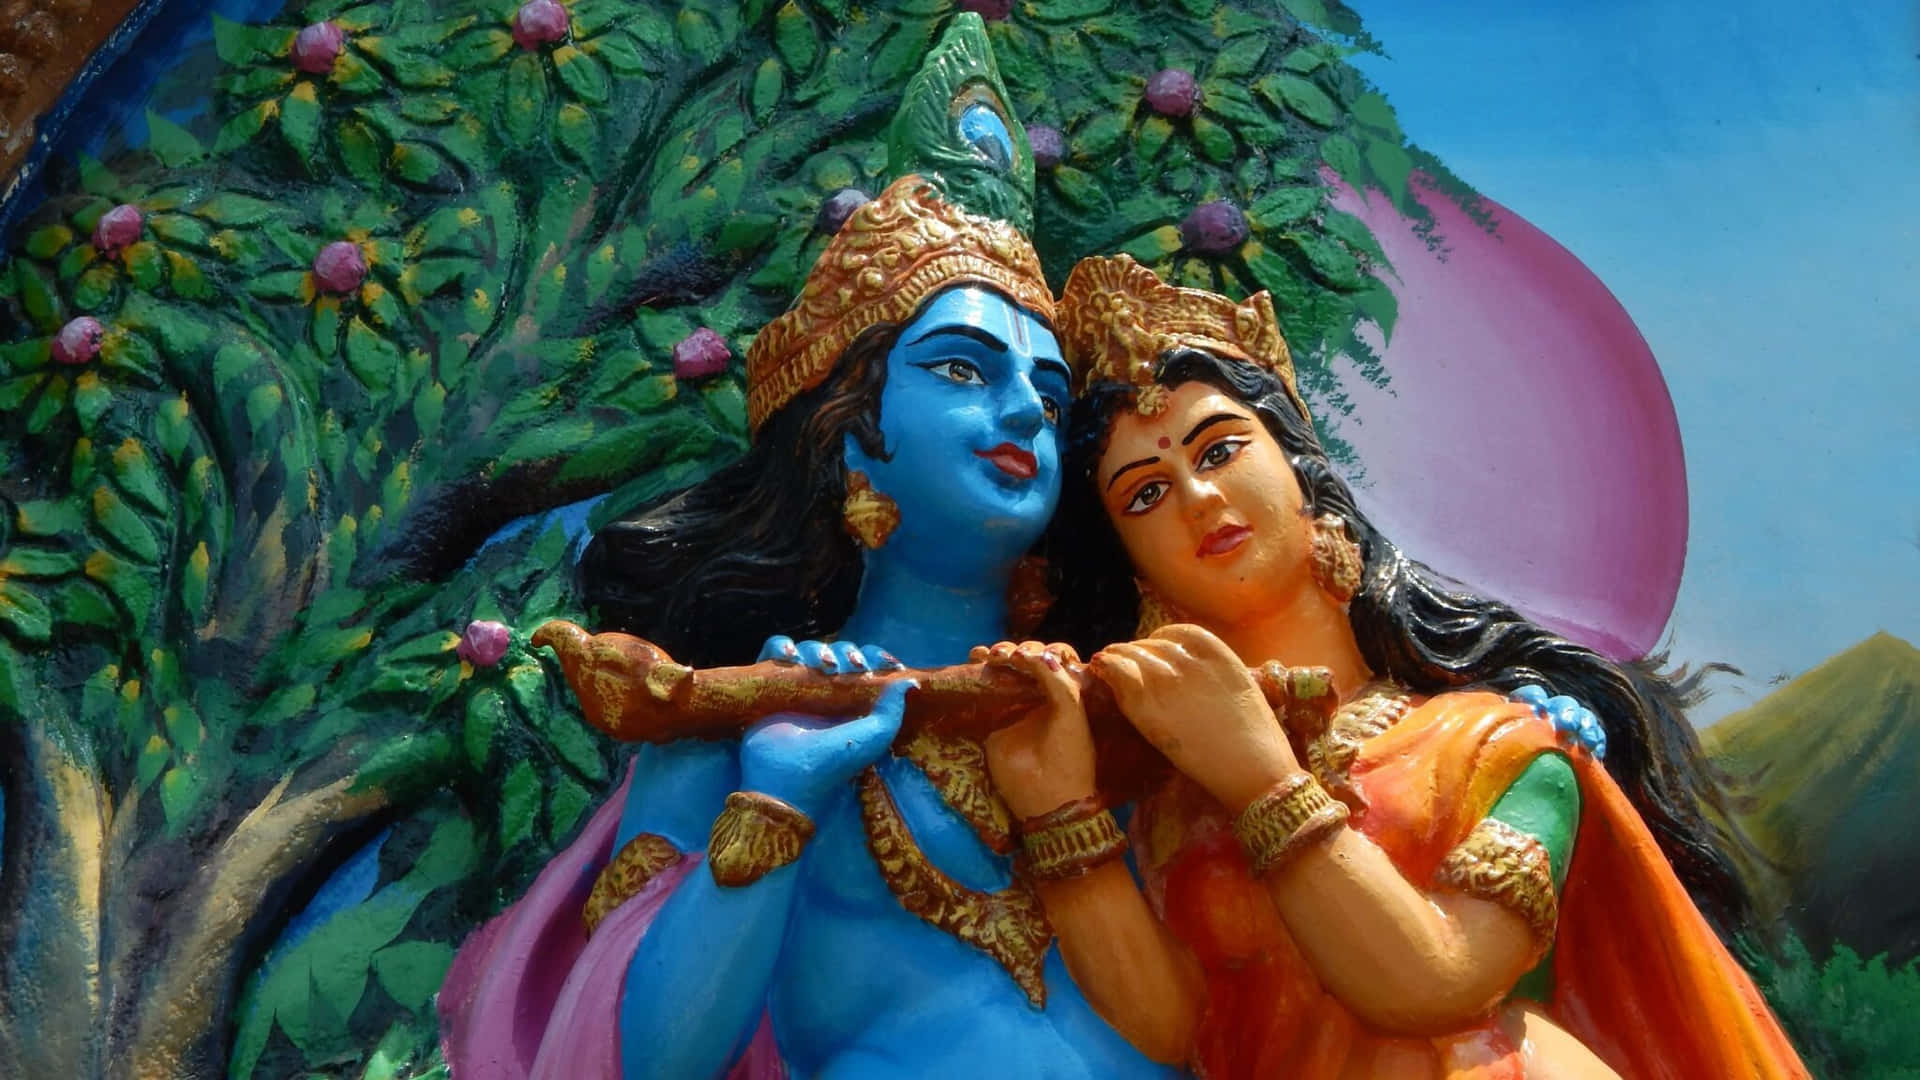 Imagende Una Pintura De Krishna Y Radha Junto A Un Árbol, Estatua